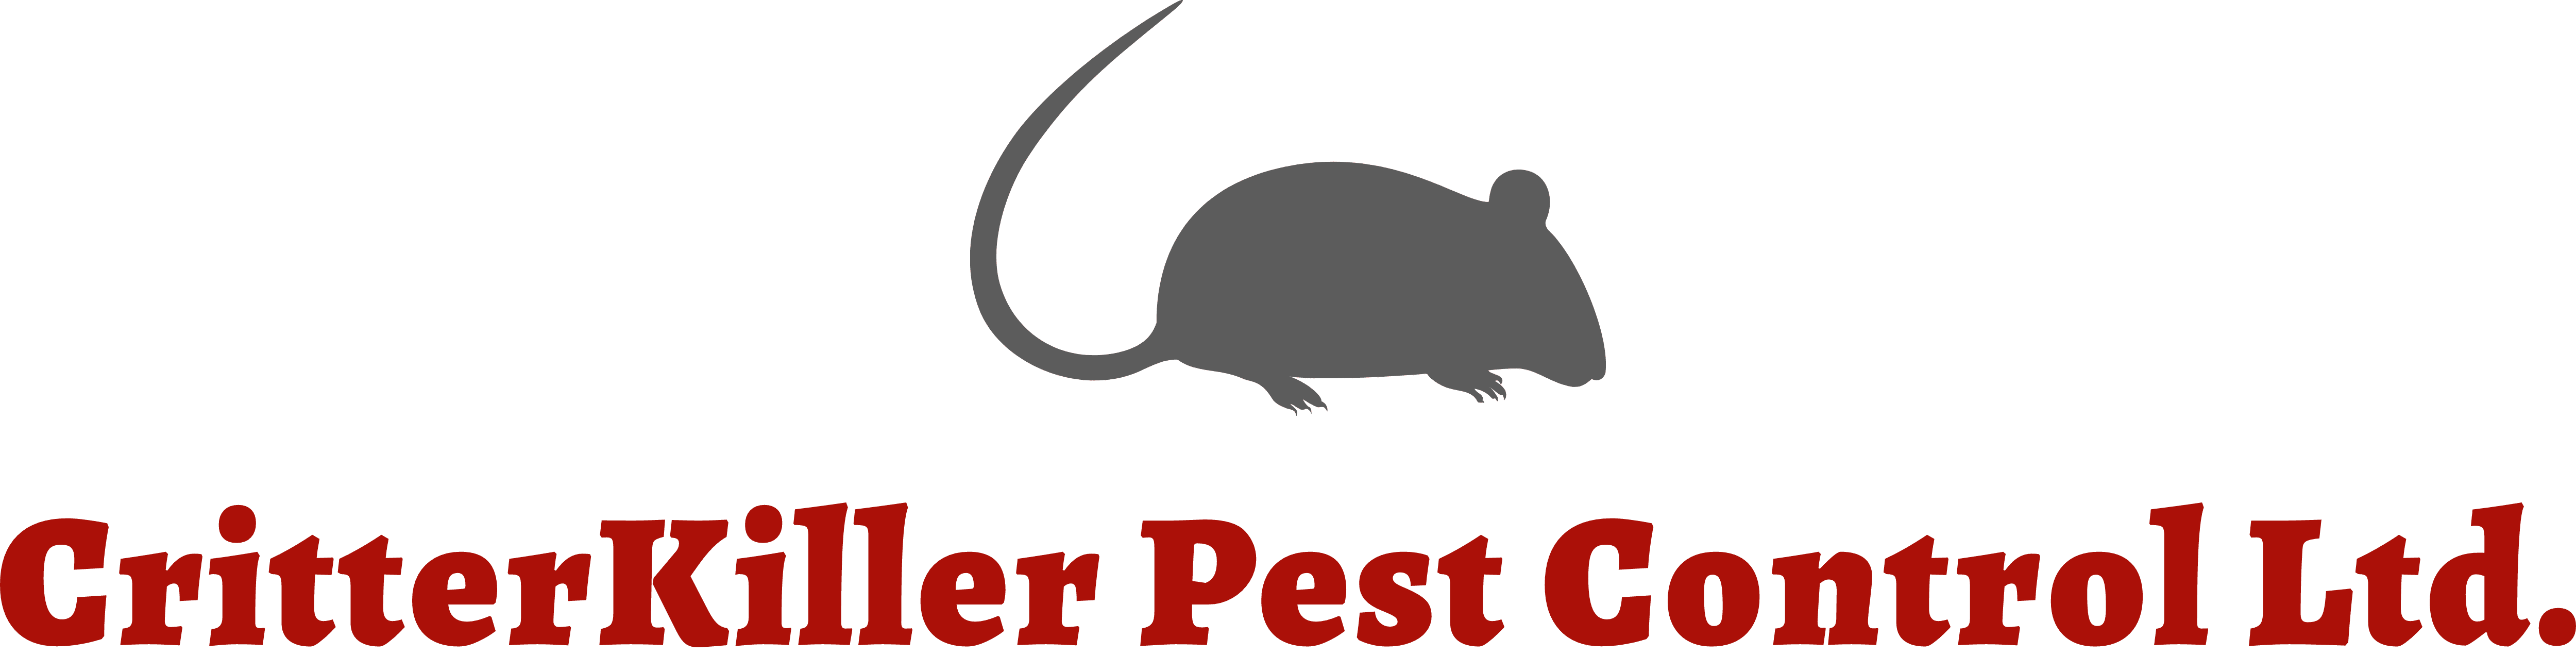 Critterkiller Pest Control Ltd